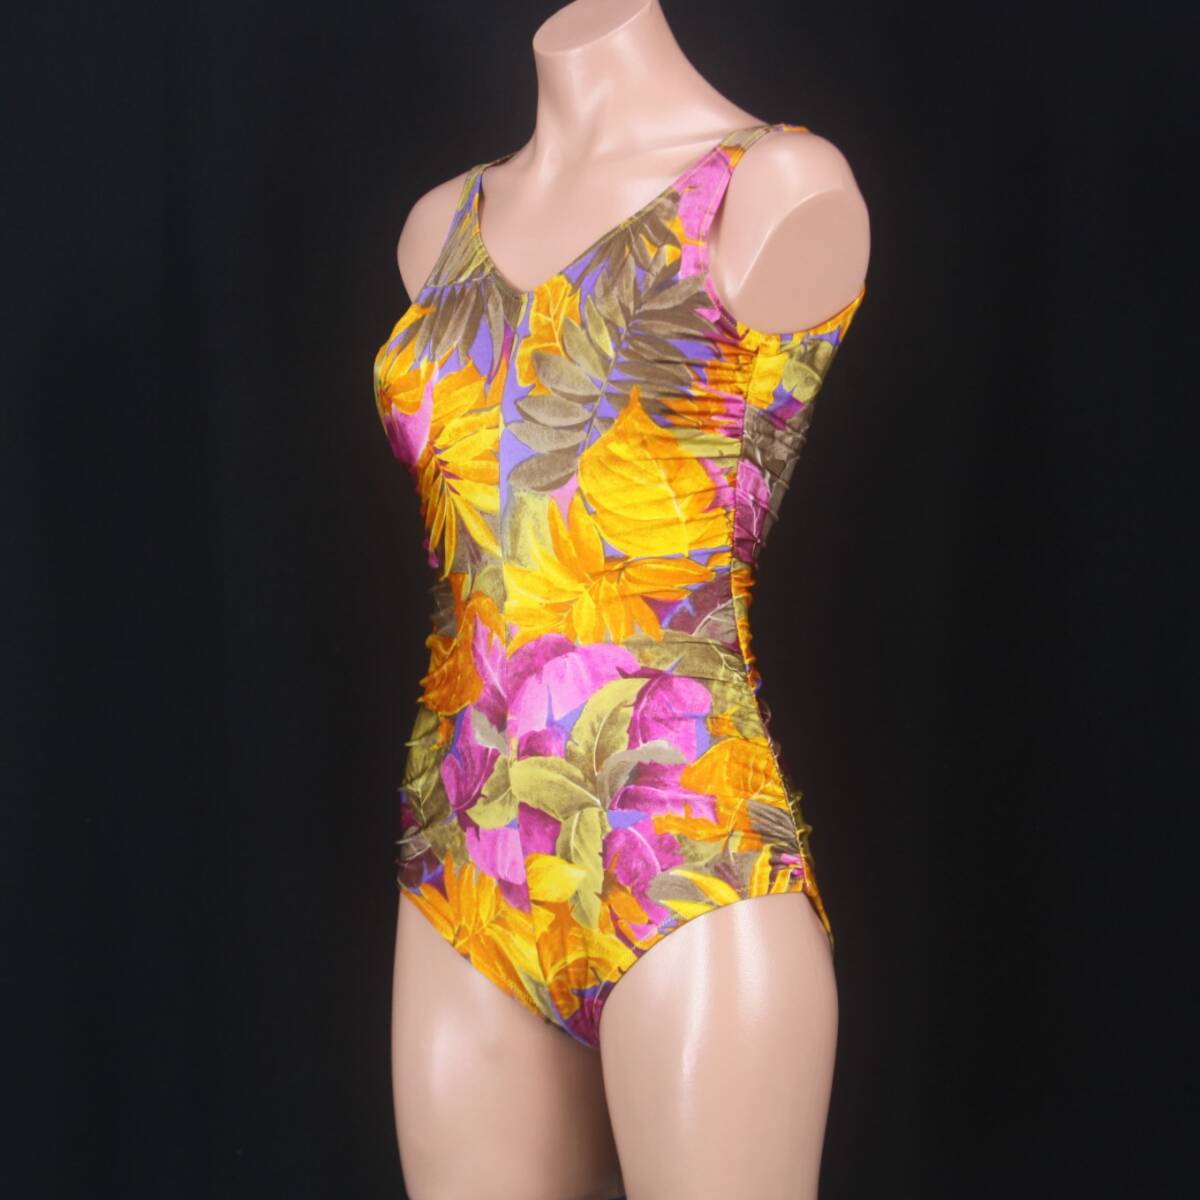 C0487*1 иен ~ есть перевод женский купальный костюм resort рисунок orange фиолетовый лиловый модный 11 размер gya The -.... One-piece море костюмы 